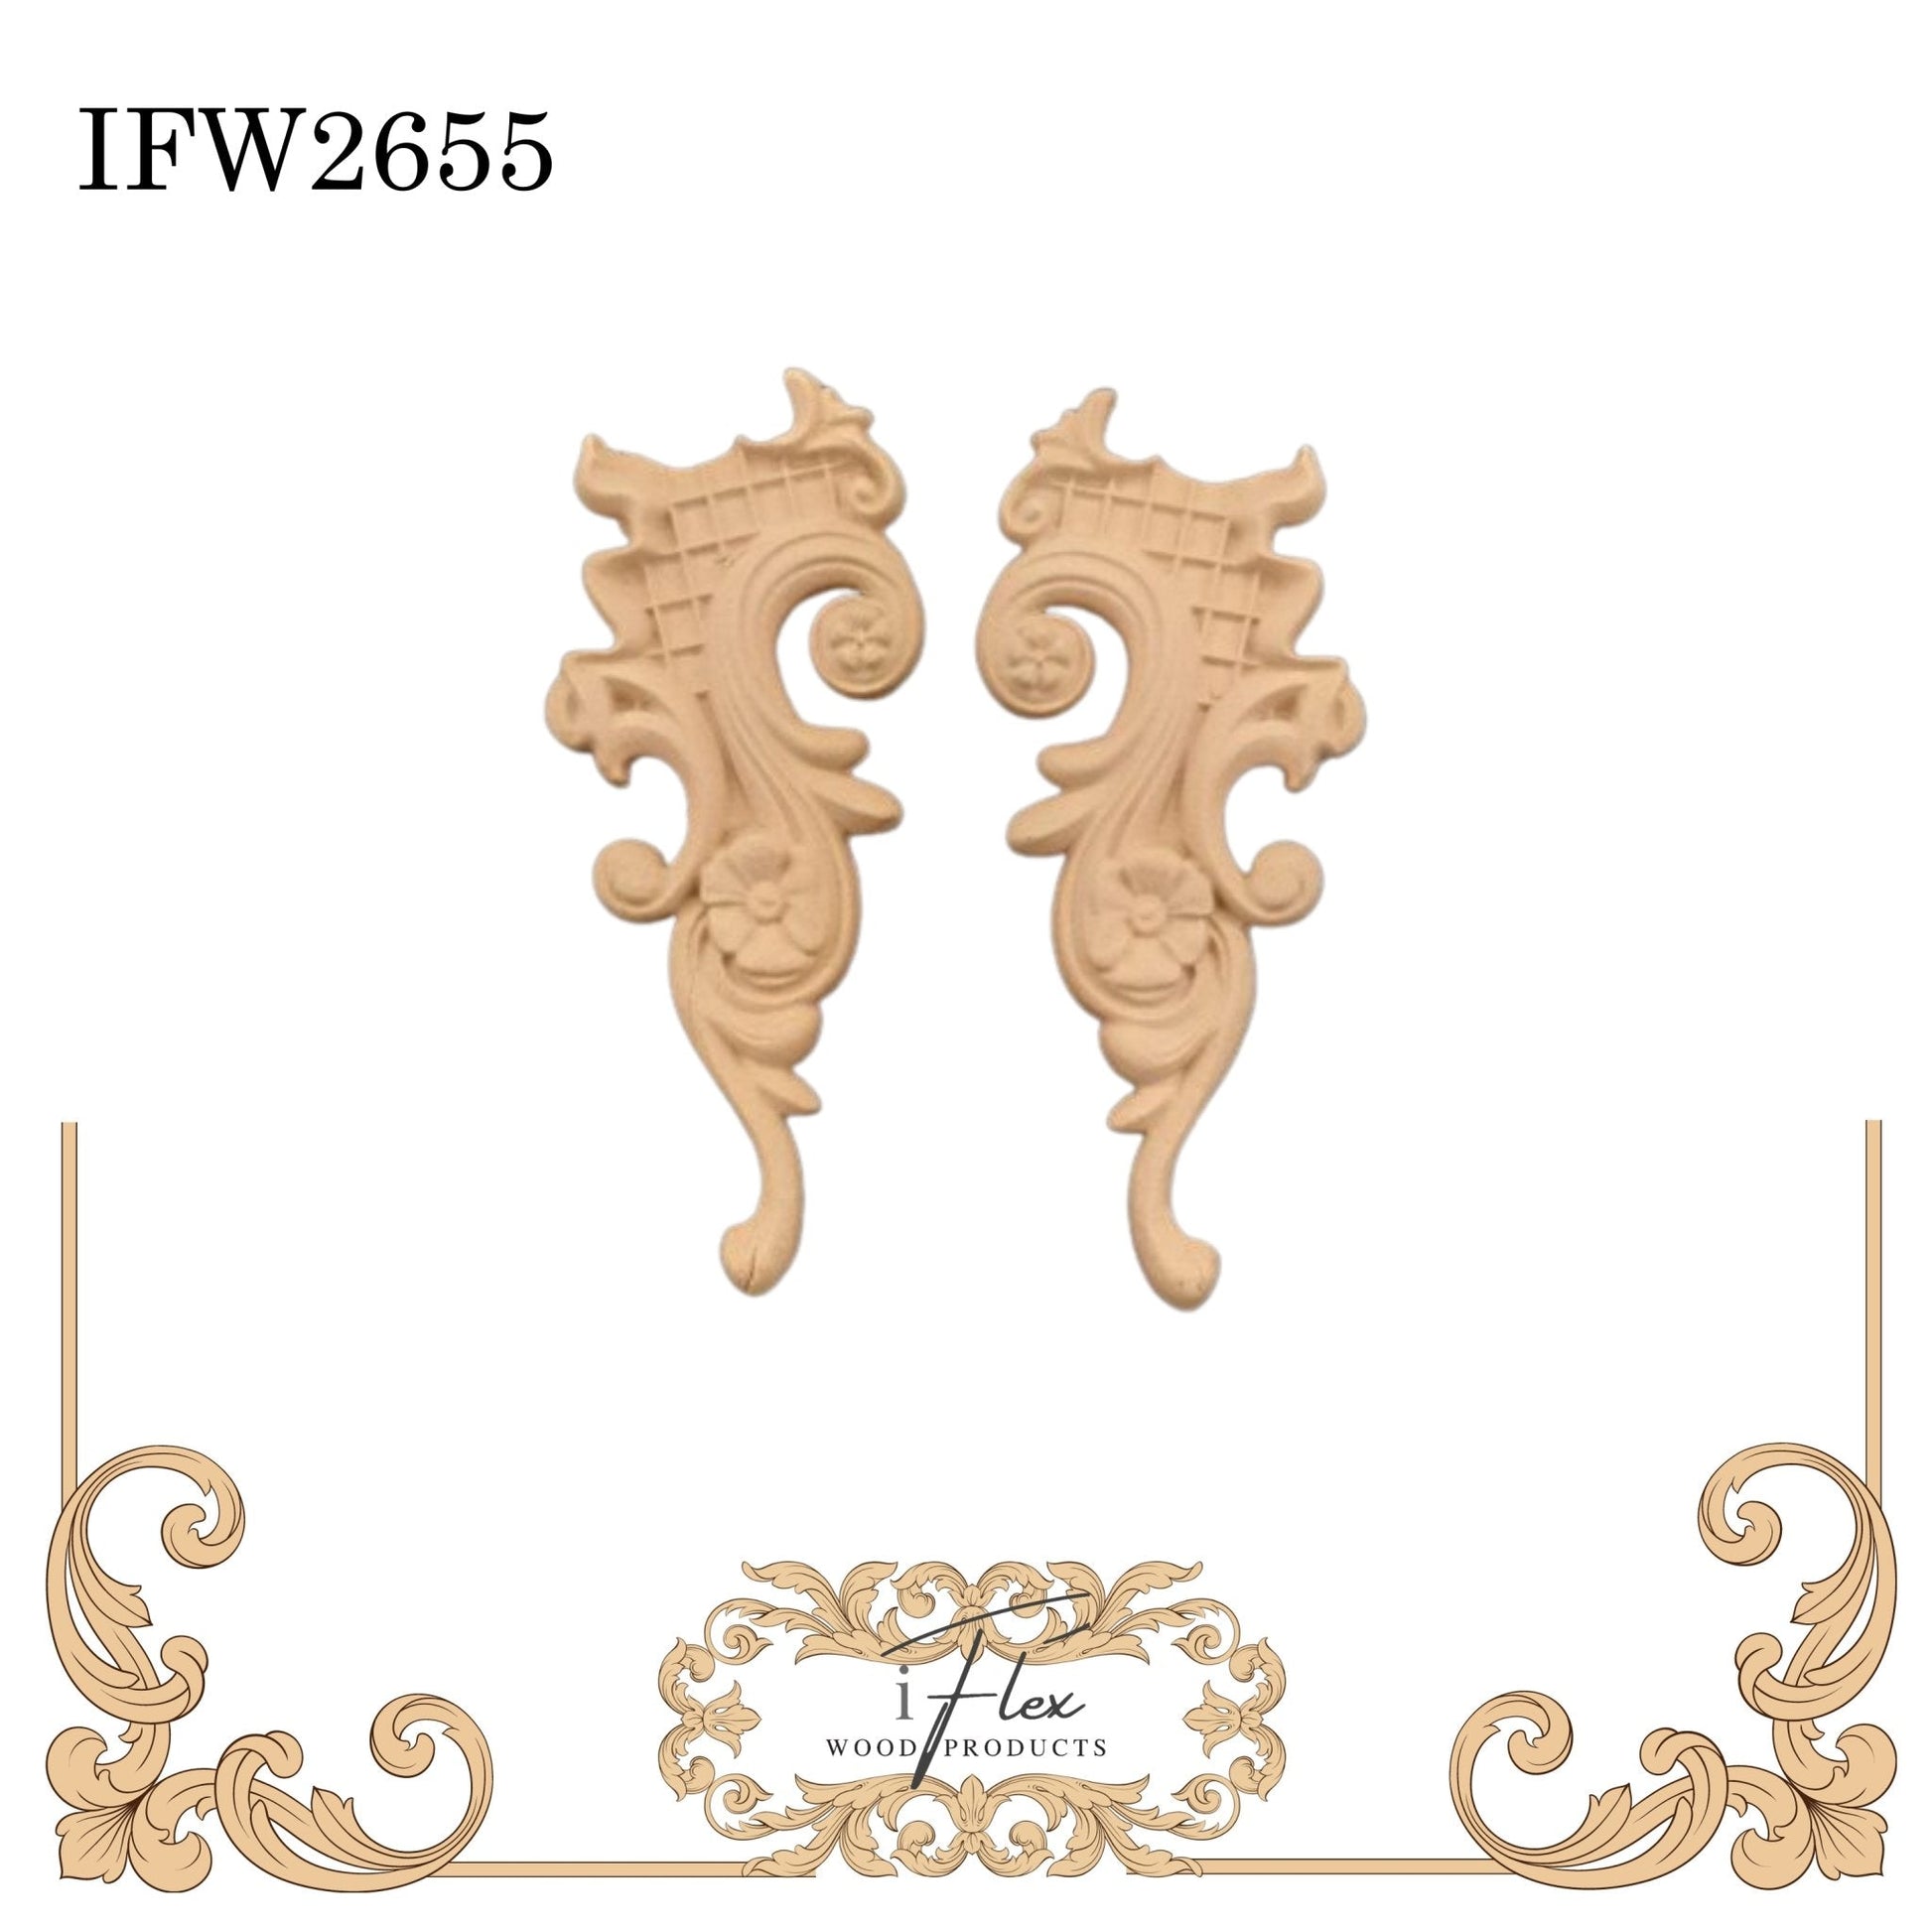 IFW 2655